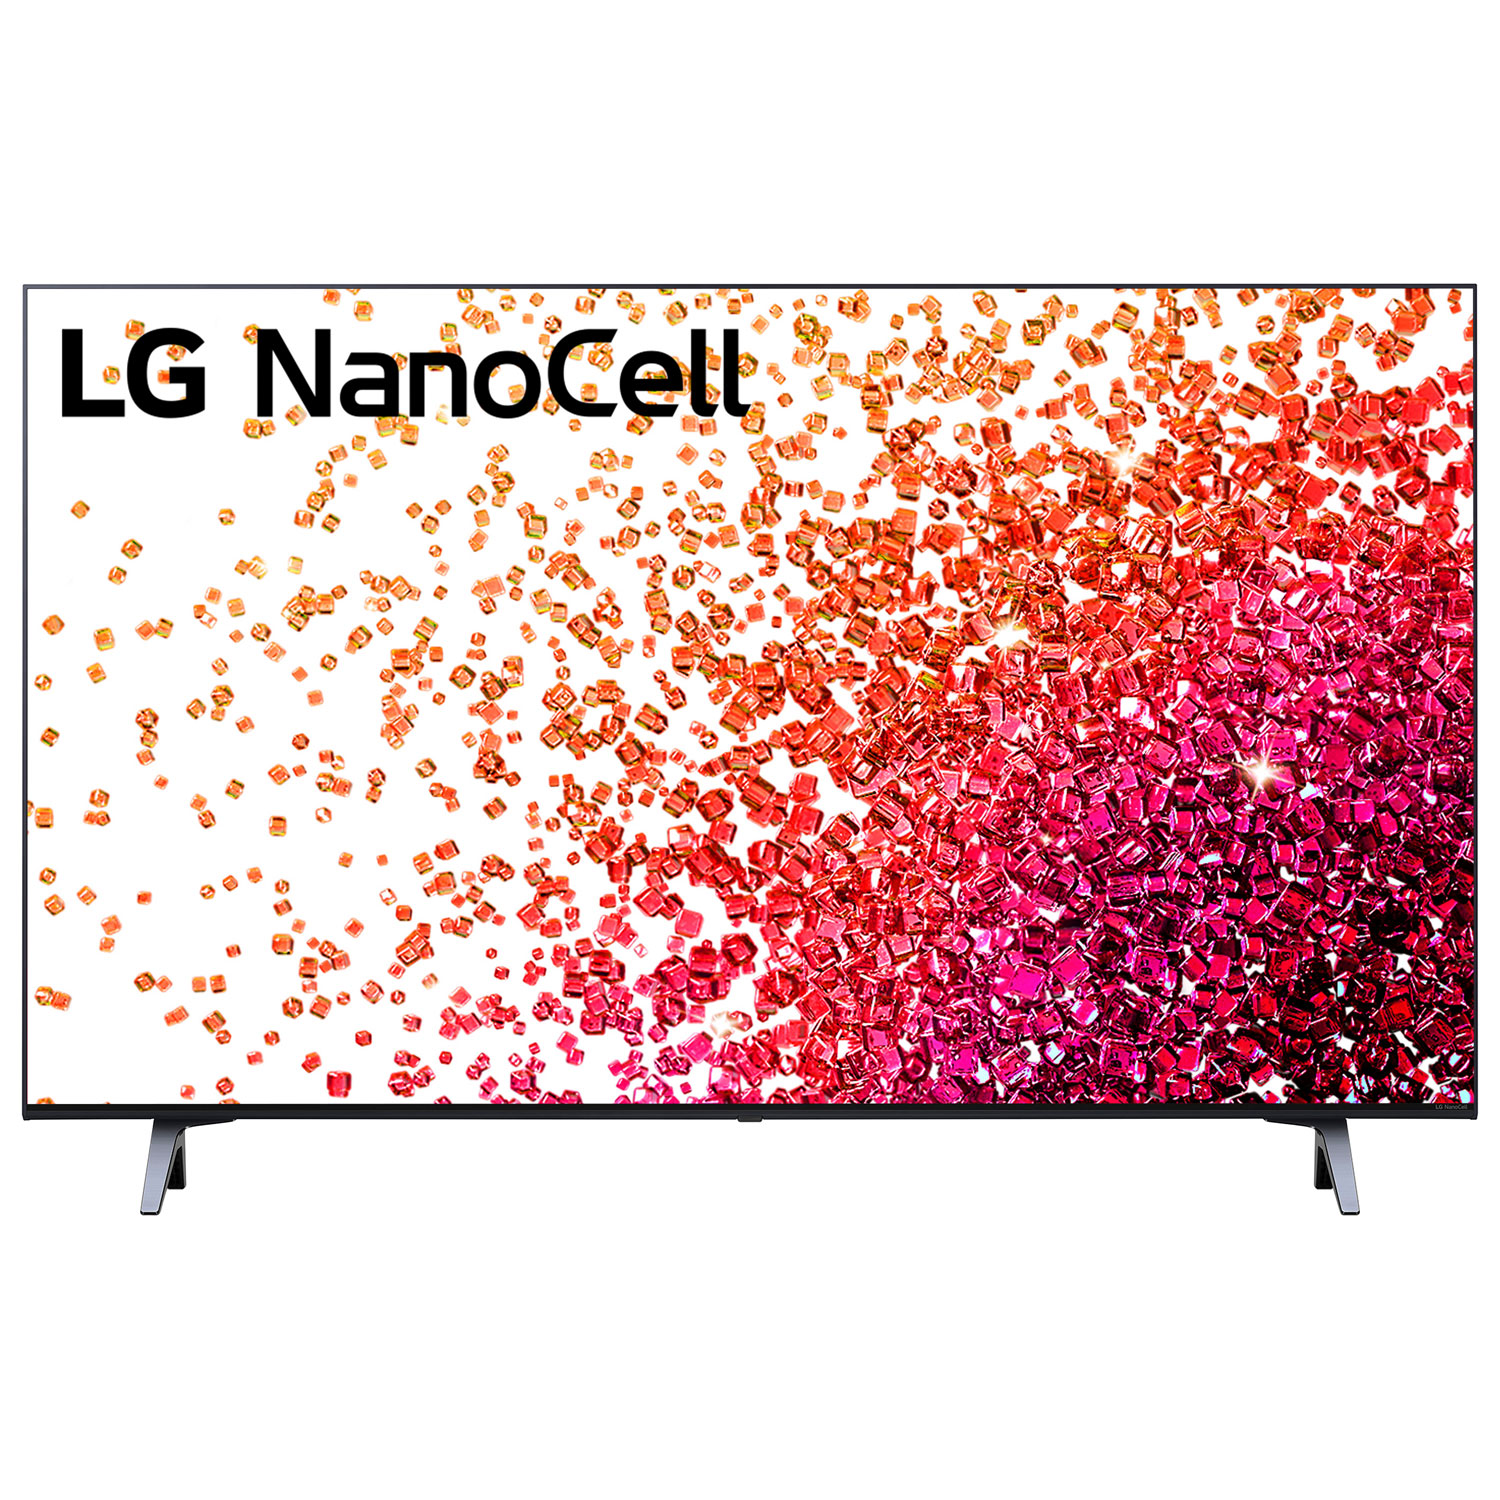 LG NanoCell 43" 4K UHD HDR LED webOS Smart TV (43NANO75UPA) - 2021